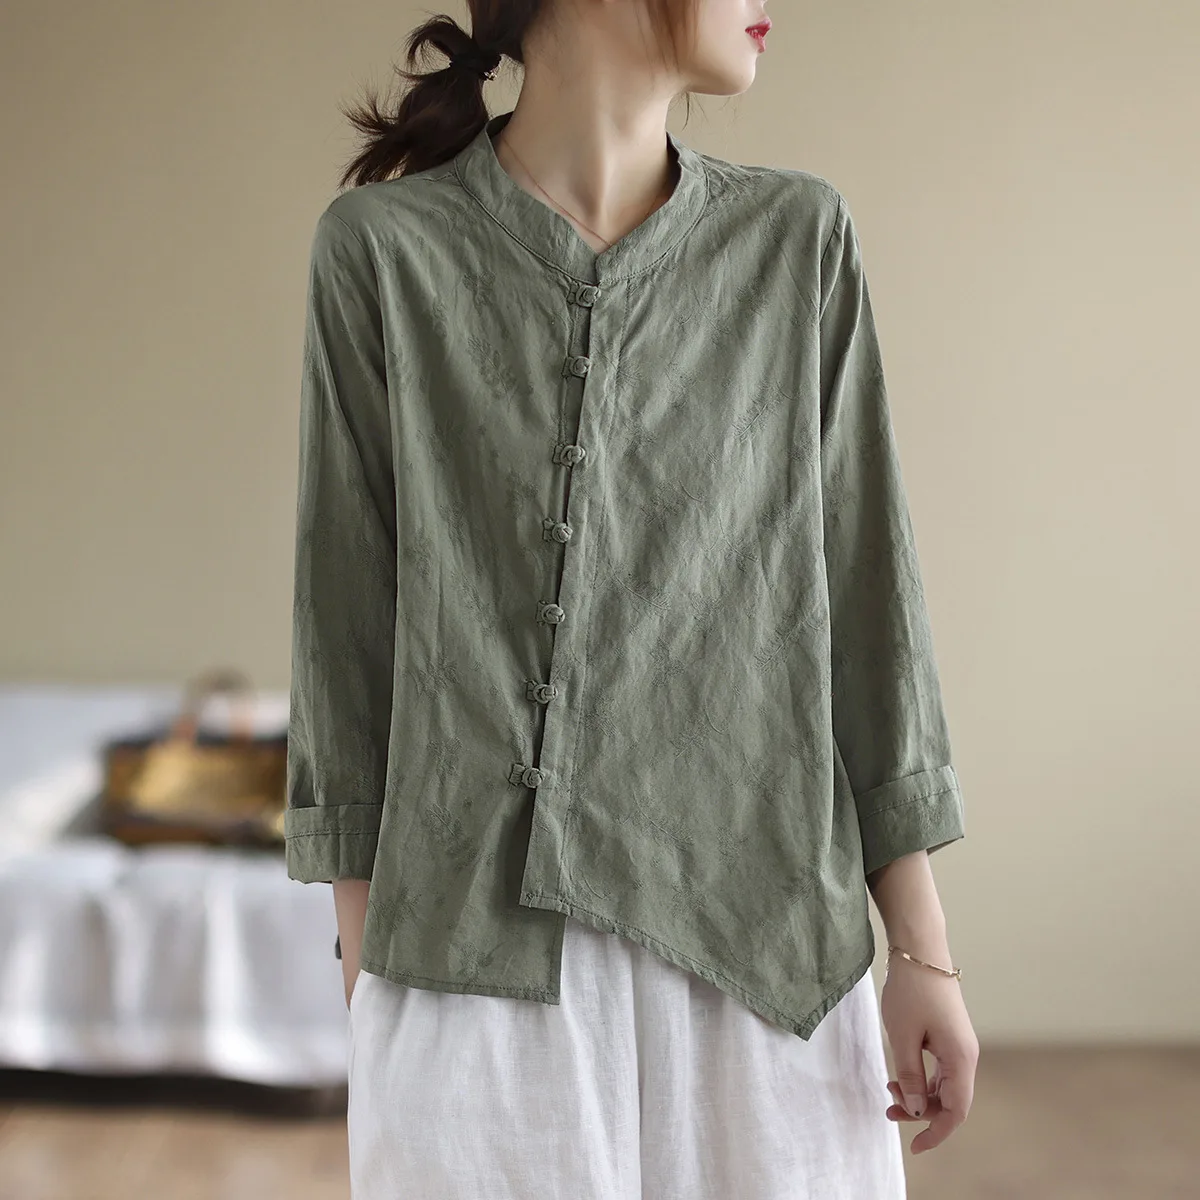 Johnature Women Vintage Jacquard Cotton Linen Shirt Solid Color ...